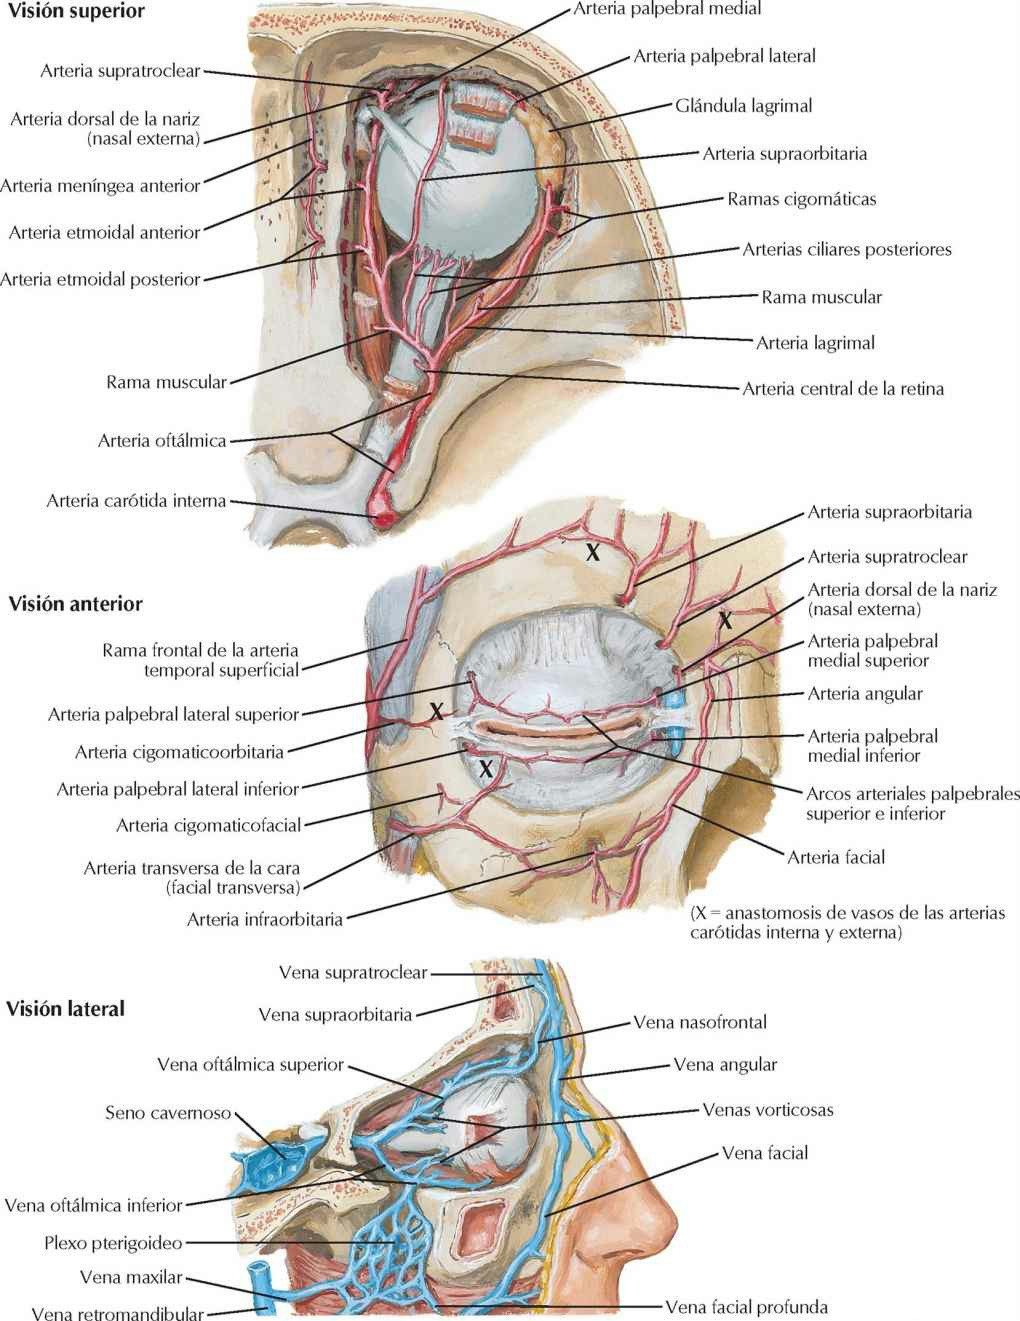 Arterias y venas de la órbita y párpados.